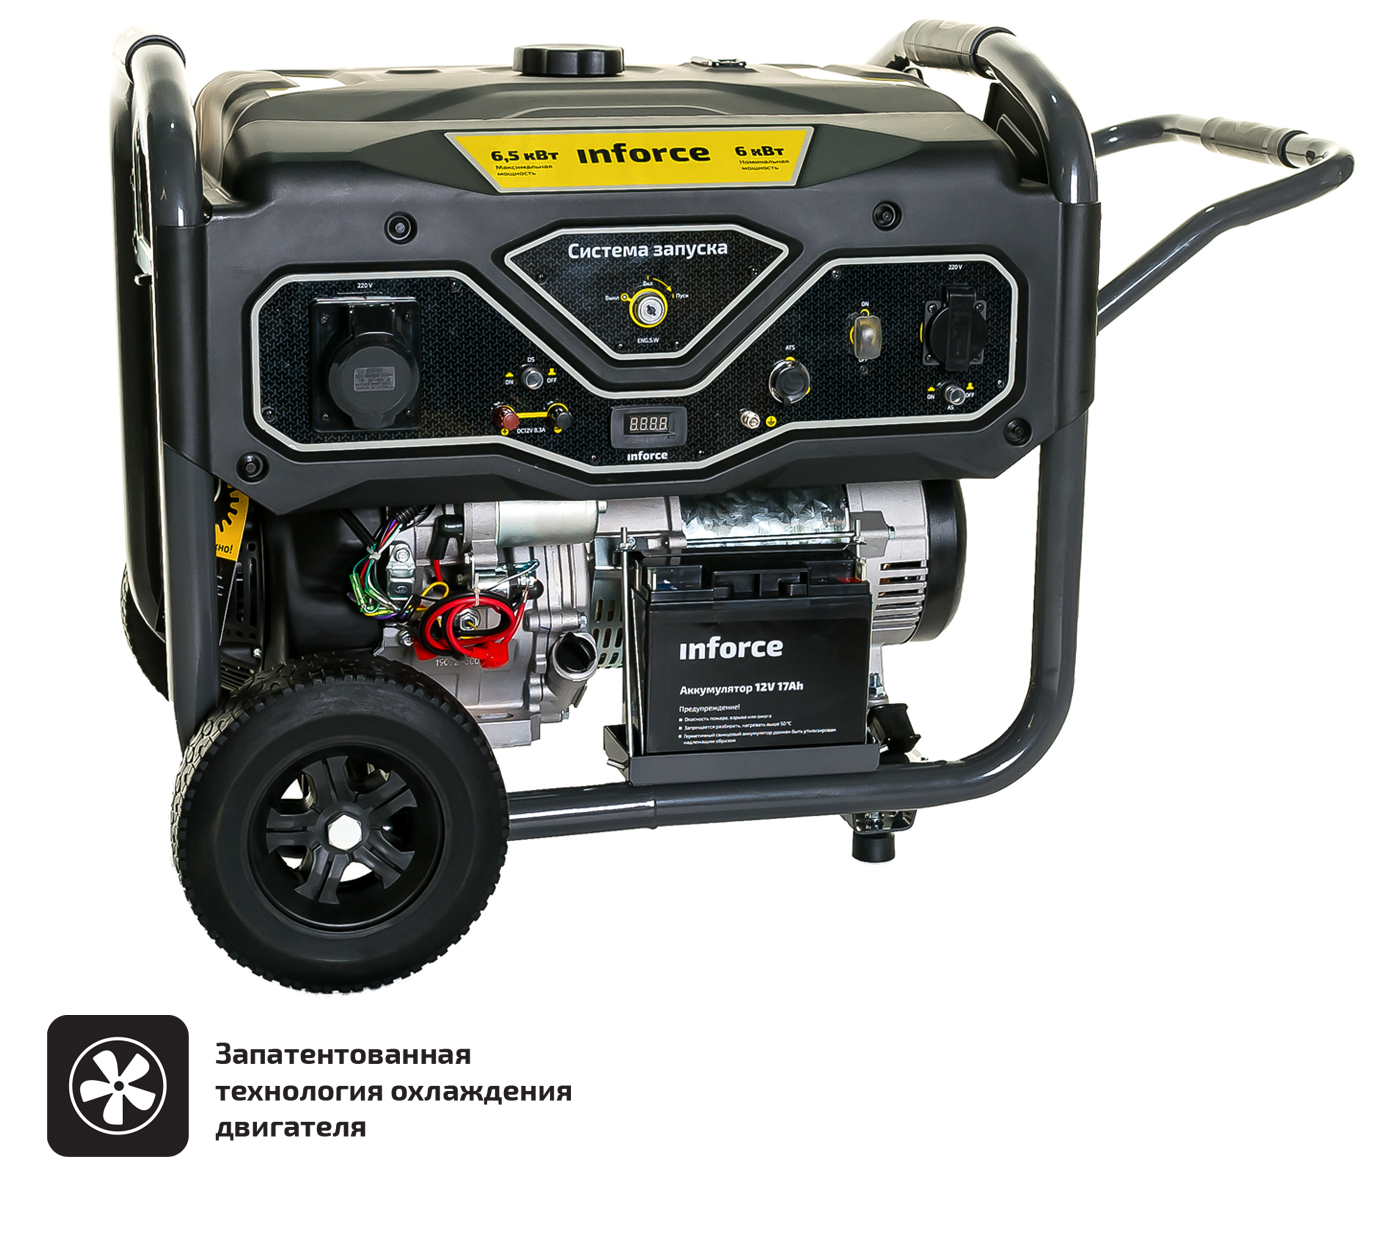 Бензиновый генератор с возможностью подключения блока автоматики Inforce GL 6500 04-03-15